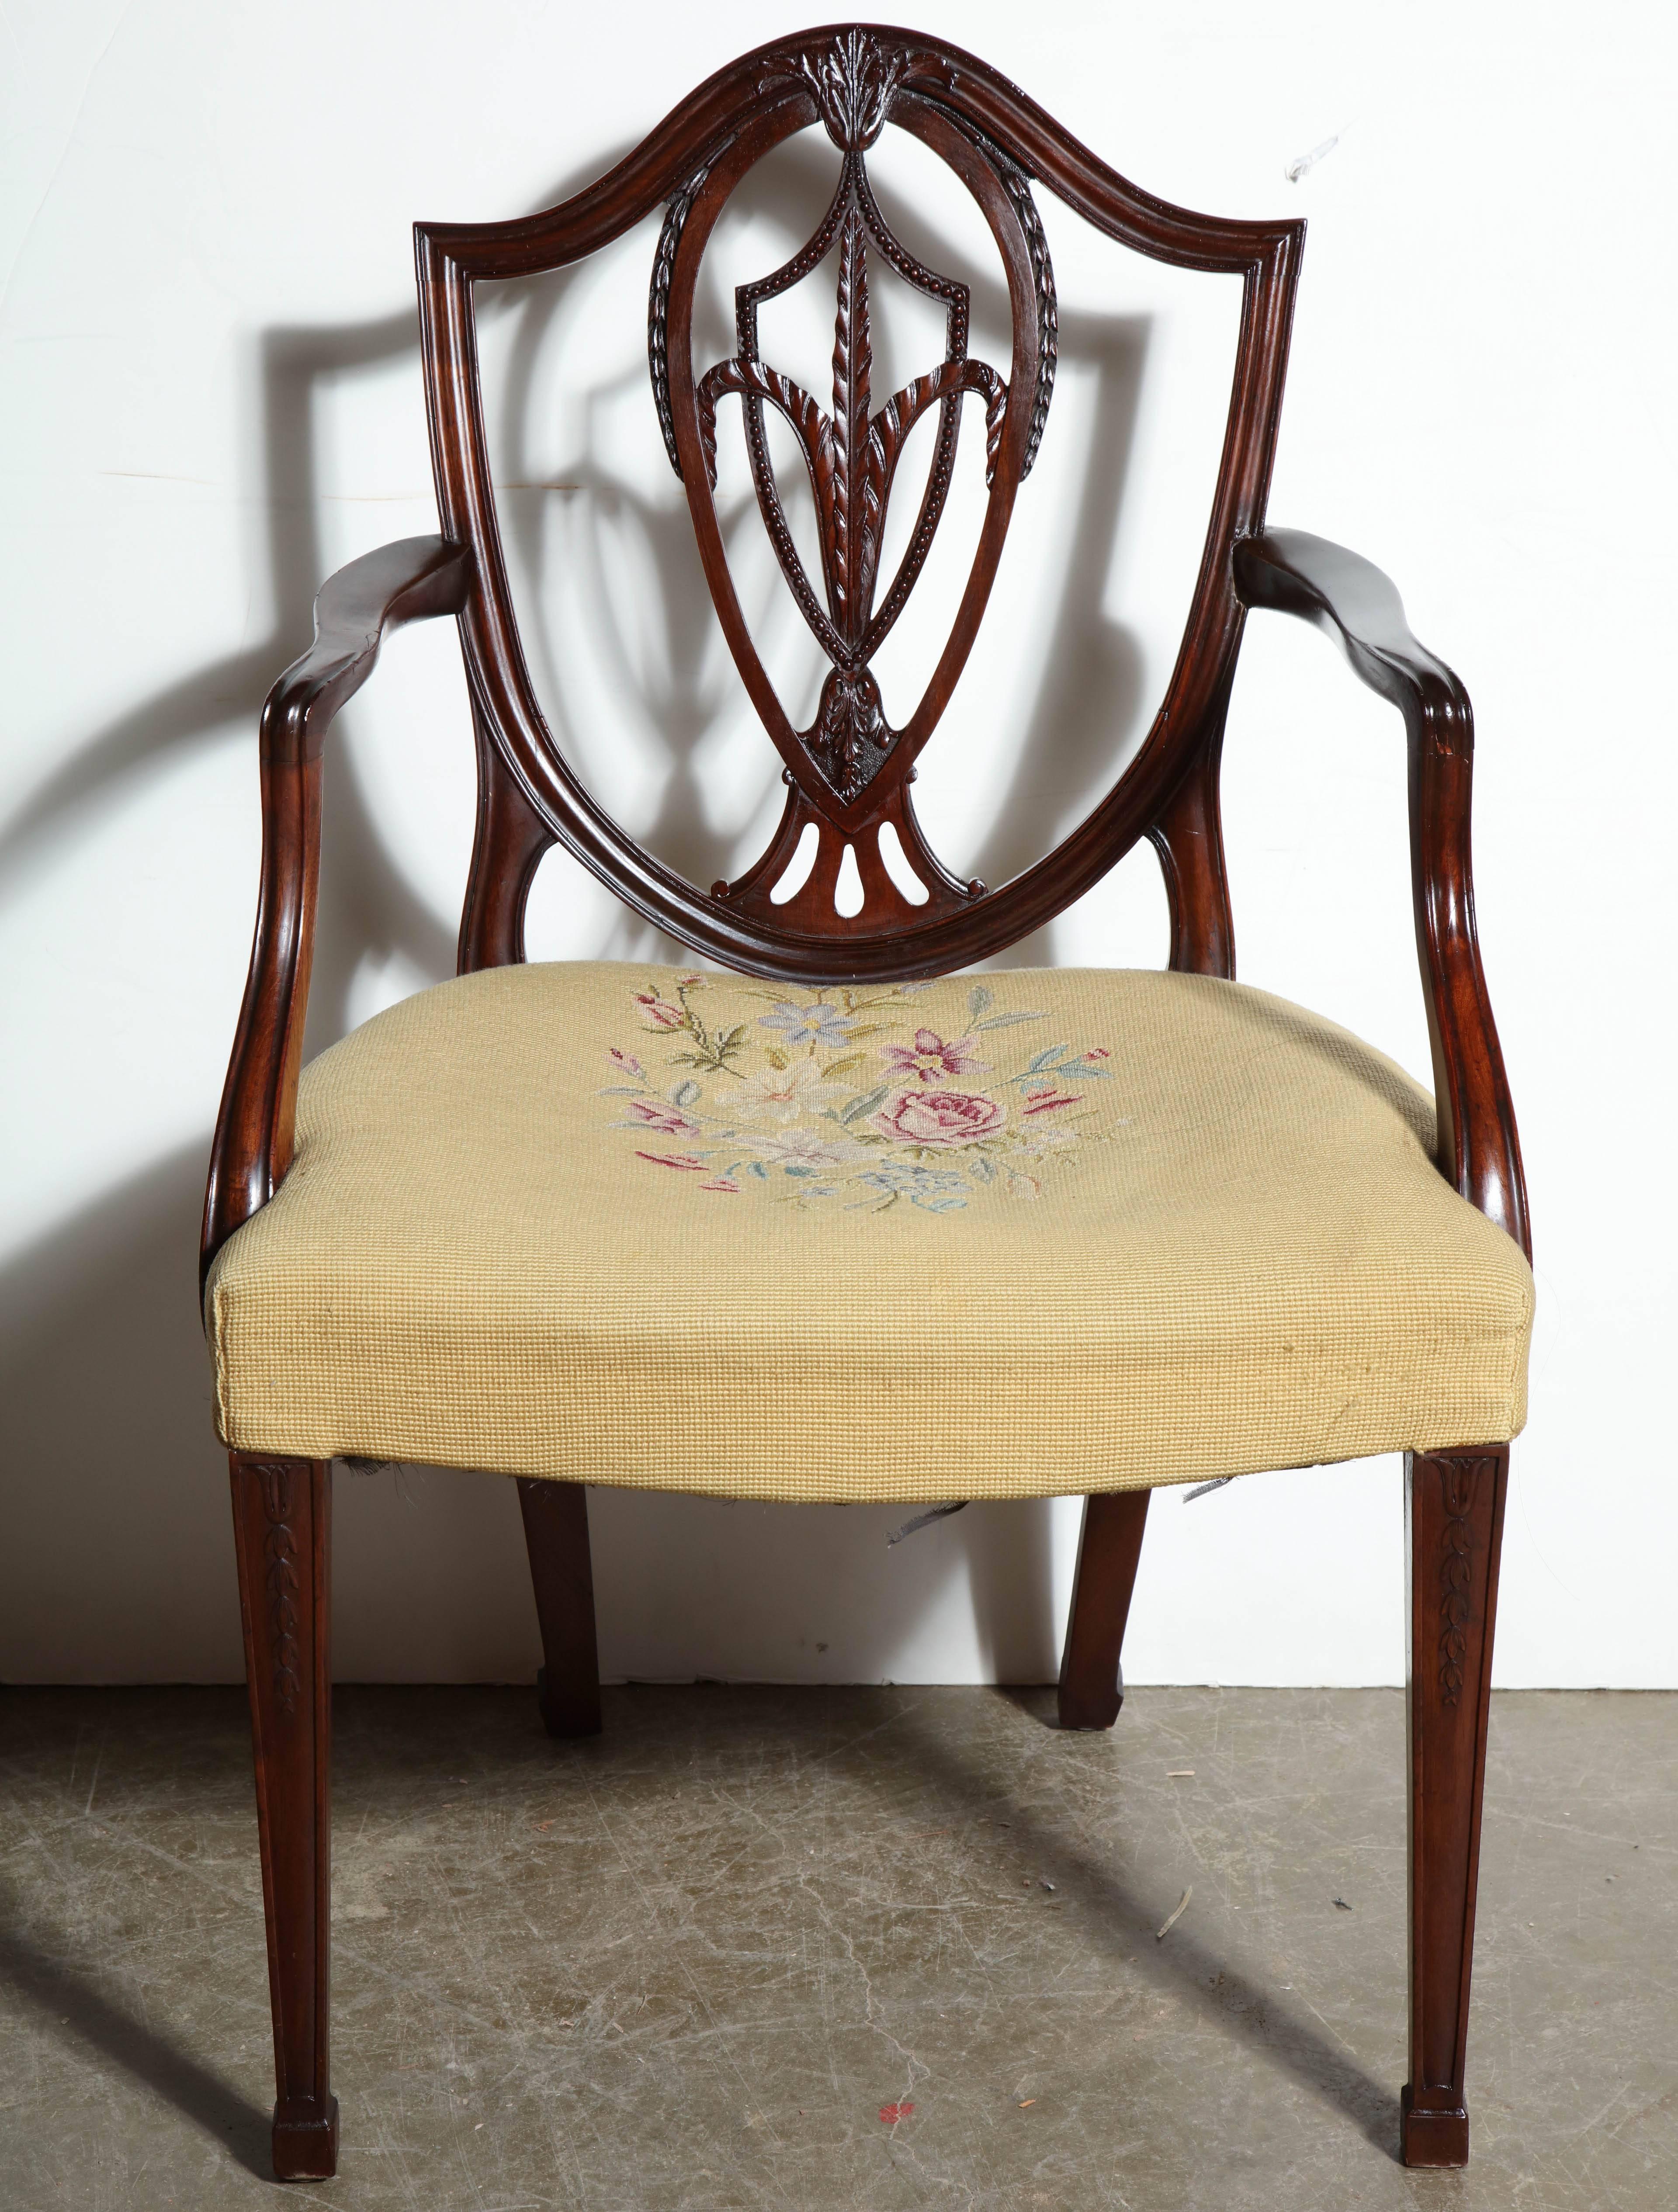 Satz von 12 George III (Hepplewhite) Mahagoni-Schild zurück Esszimmerstühle mit geschnitzten verflochtenen Splats, geformte Arme, Spaten Füße und Nadelspitze gepolsterte Sitze.

Das Set besteht aus 12 Sesseln.